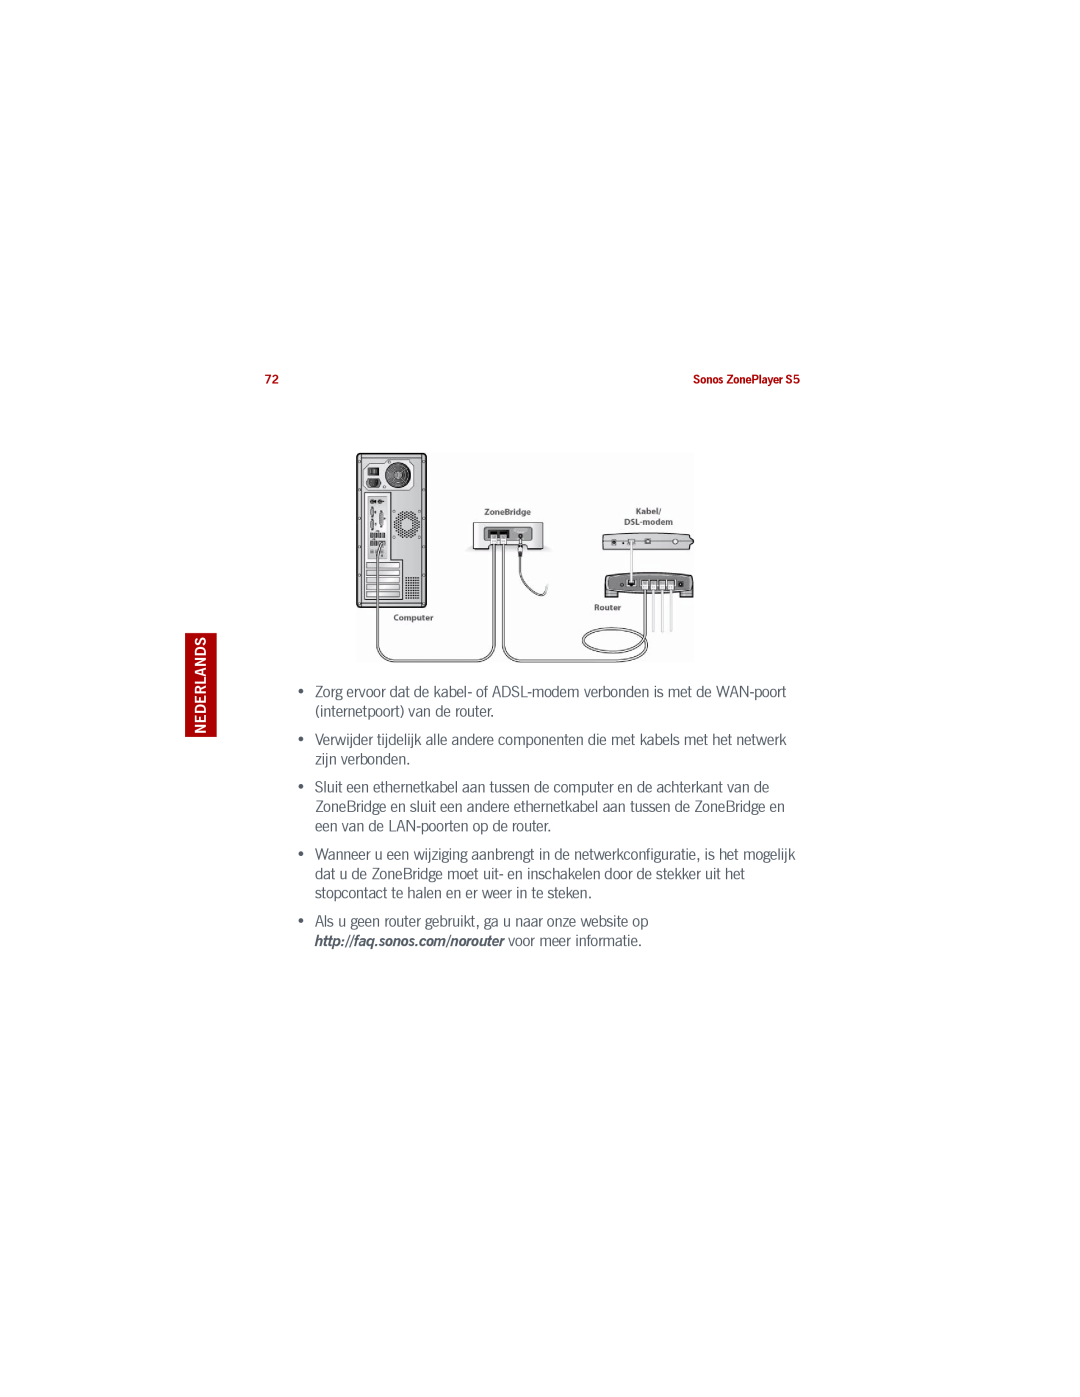 Sonos S5 manual Zorg ervoor dat de kabel- of ADSL-modemverbonden is met de WAN-poortinternetpoort van de router 